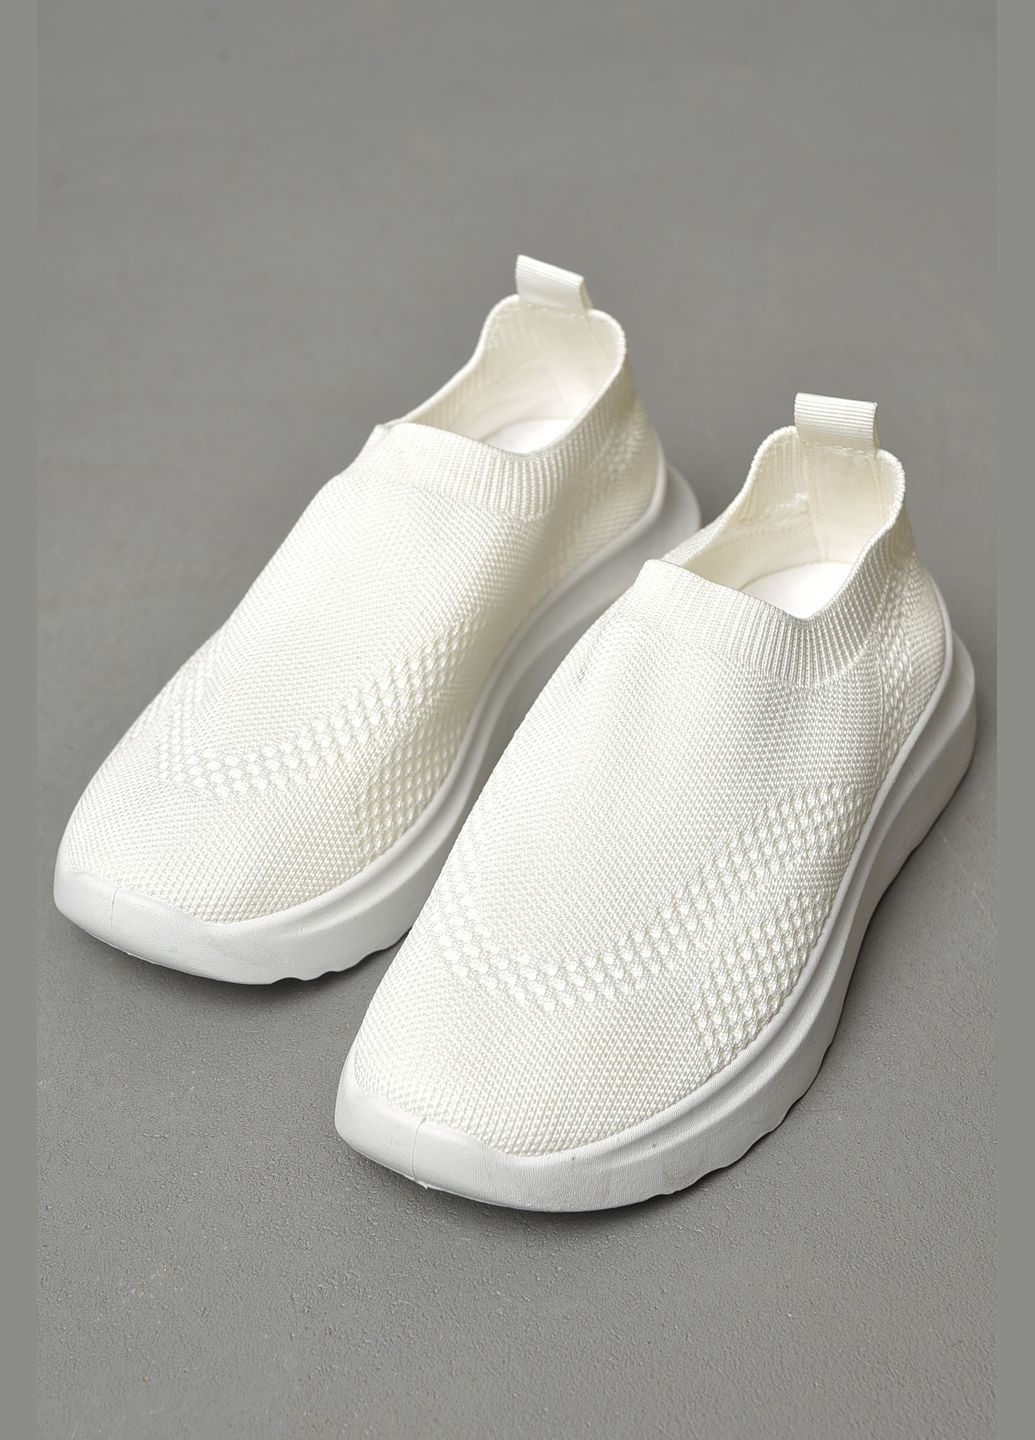 Белые демисезонные кроссовки женские белого цвета текстиль Let's Shop